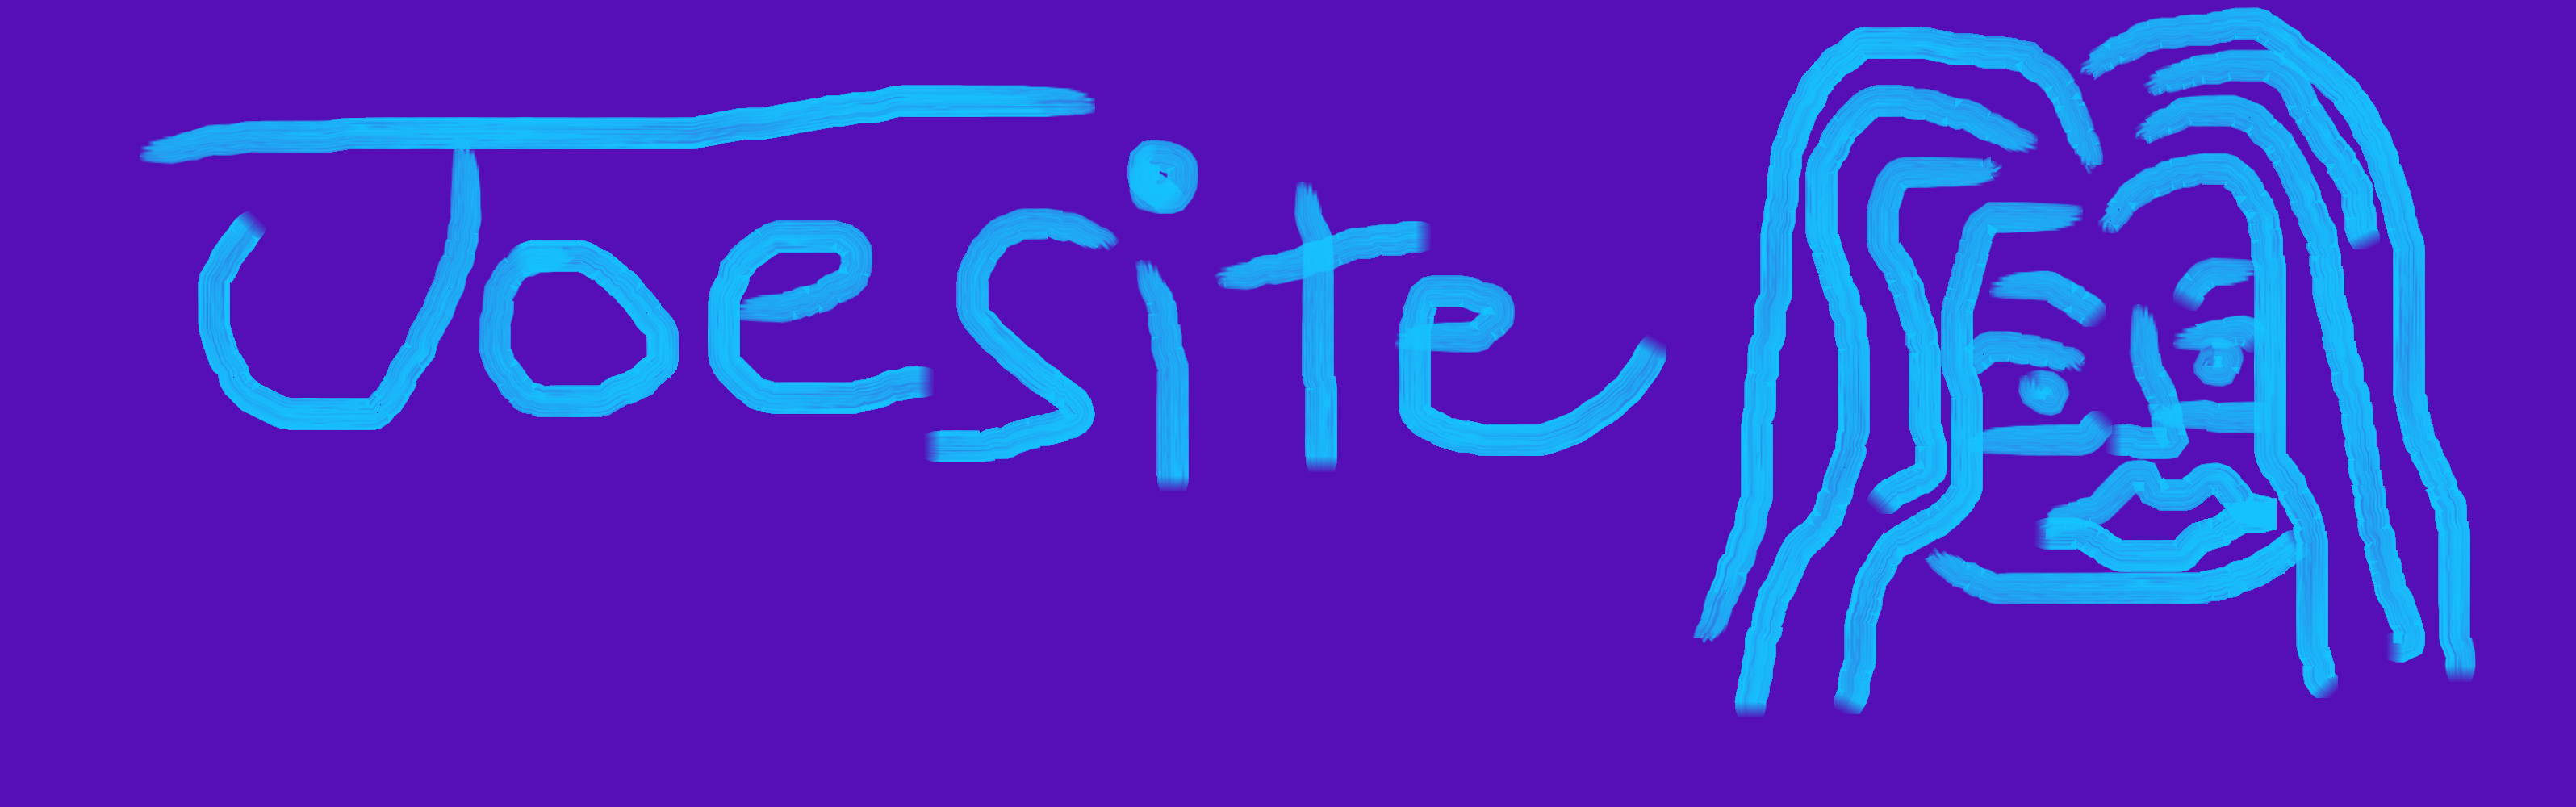 Joesite2 Banner